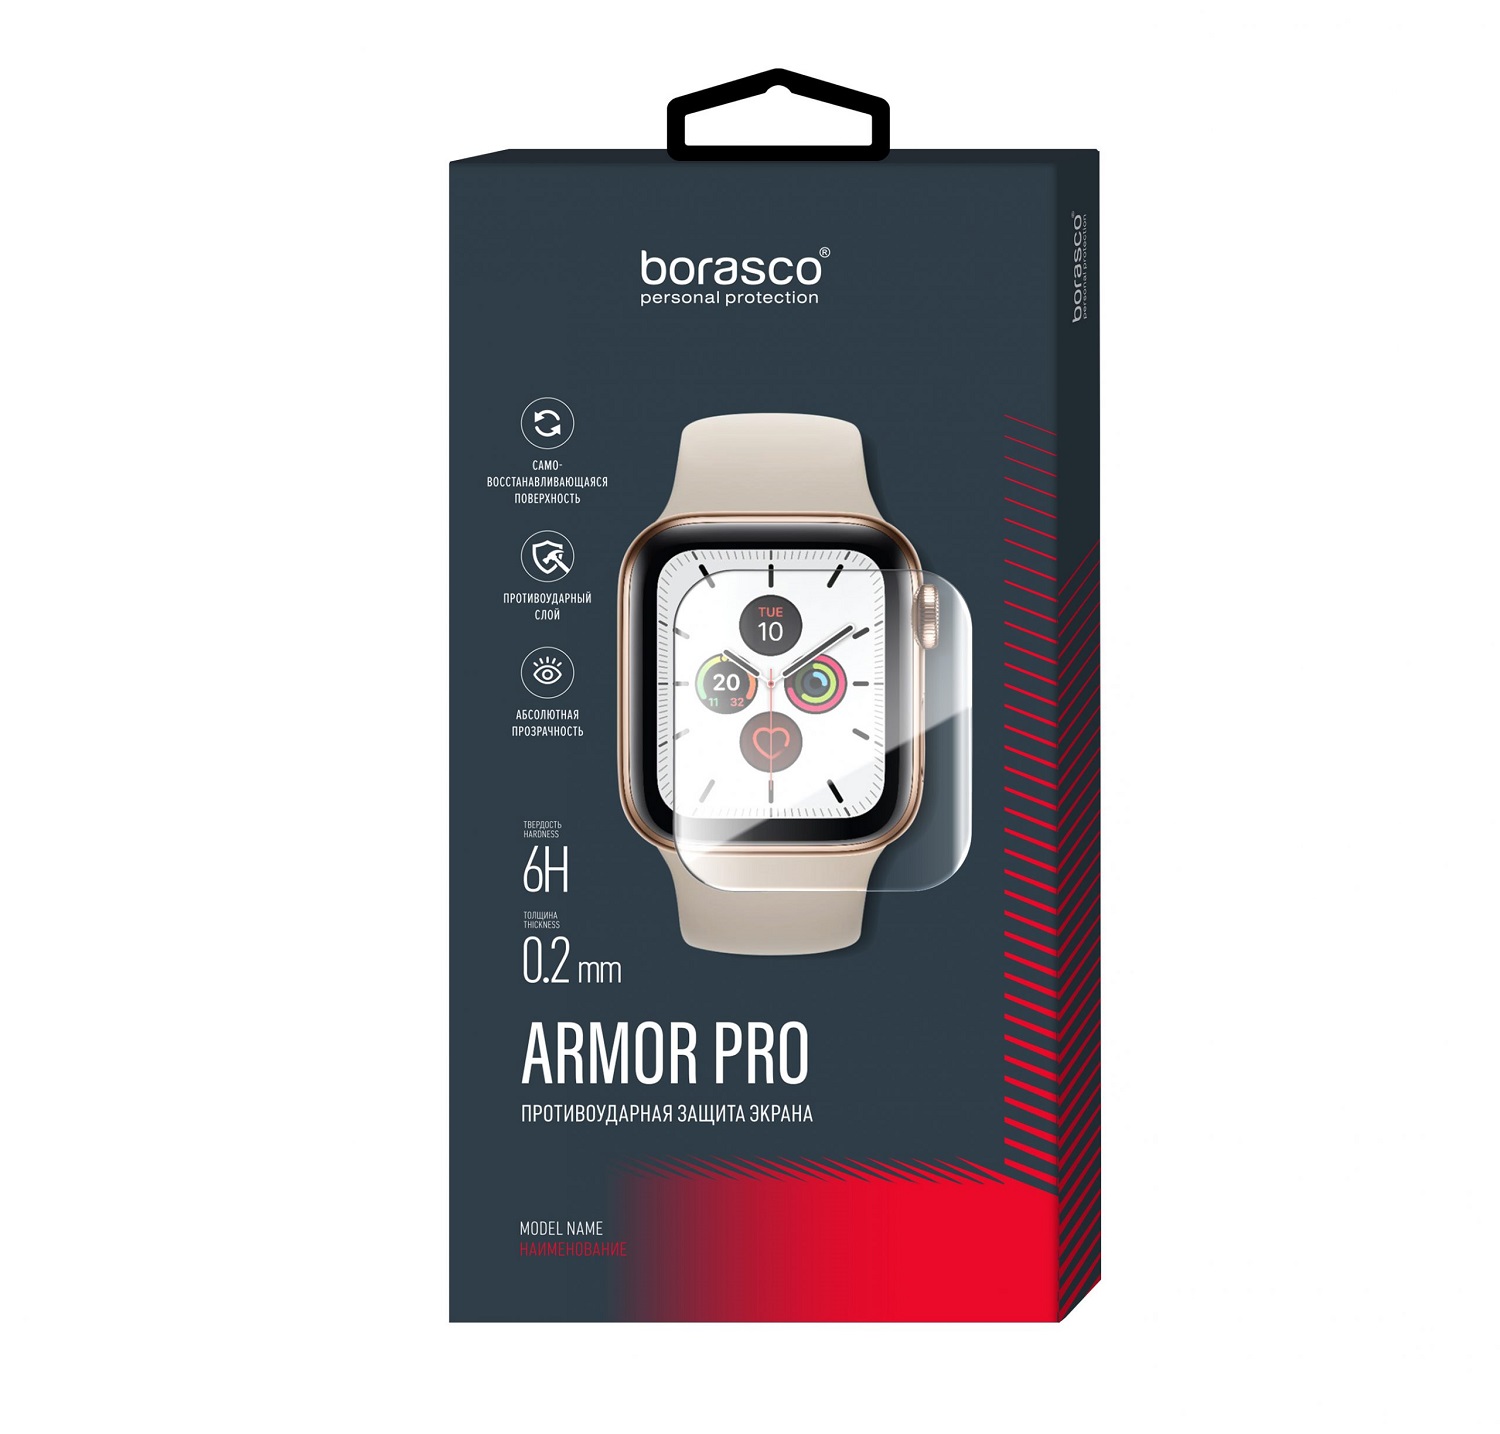 Защита экрана BoraSCO Armor Pro для Xiaomi Mi Watch защита экрана borasco armor pro для honor 50